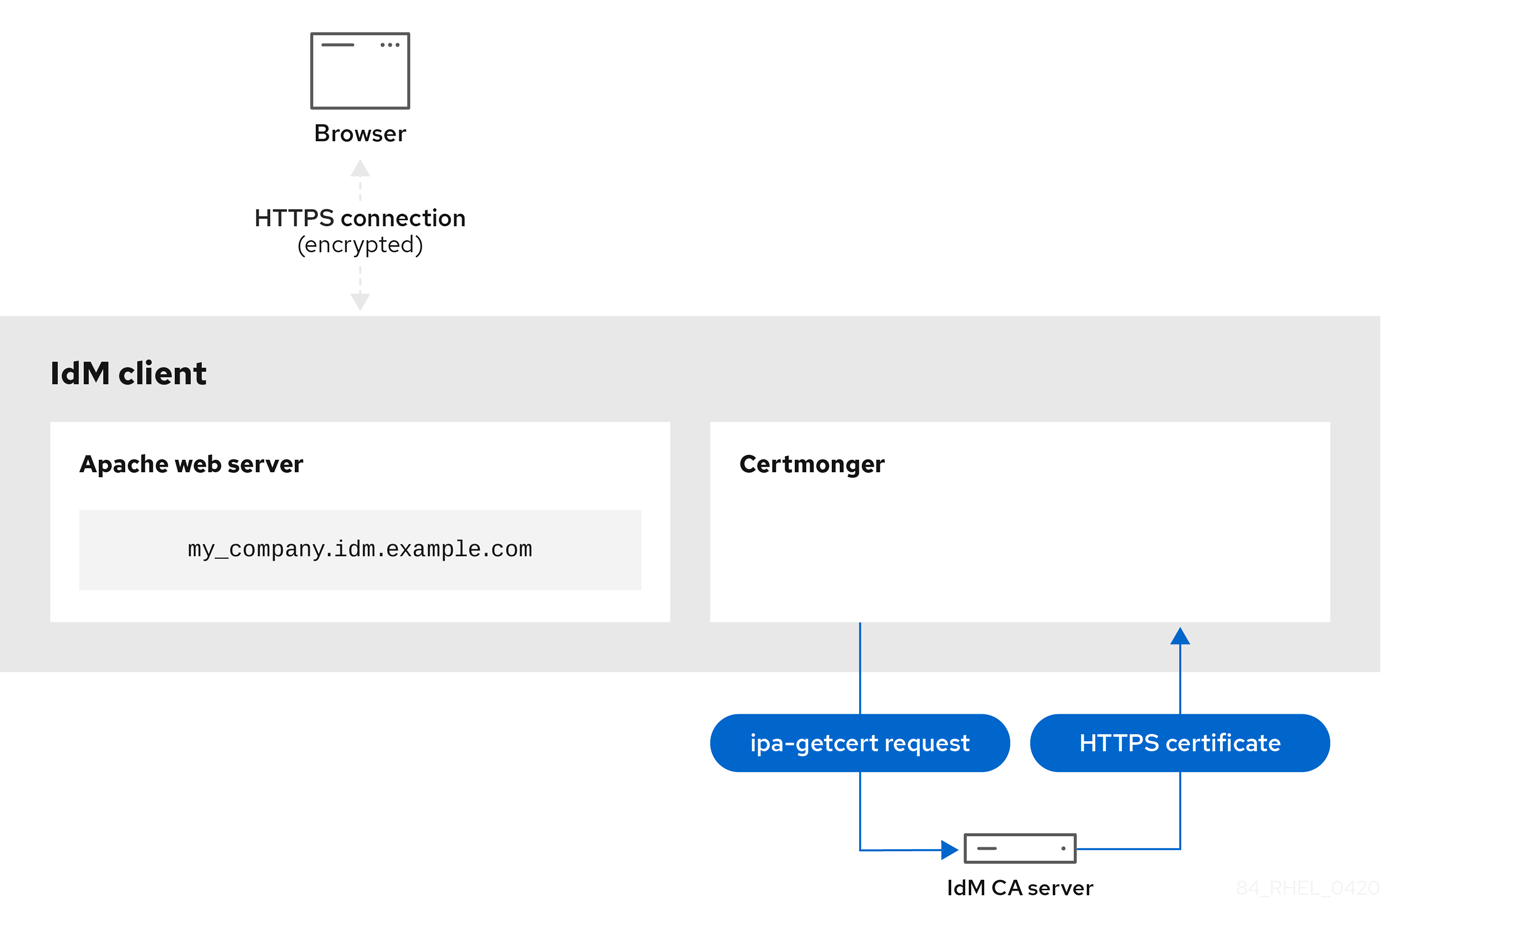 接続する IdM クライアントの certmonger サービスから IdM CA サーバーに接続する矢印で ipa-getcert 要求経由で接続していることを示す図。IdM CA サーバーから Certmonger への矢印には、HTTPS 証明書のラベルが付いており、HTTPS 証明書が certmonger サービスに転送されていることが分かります。